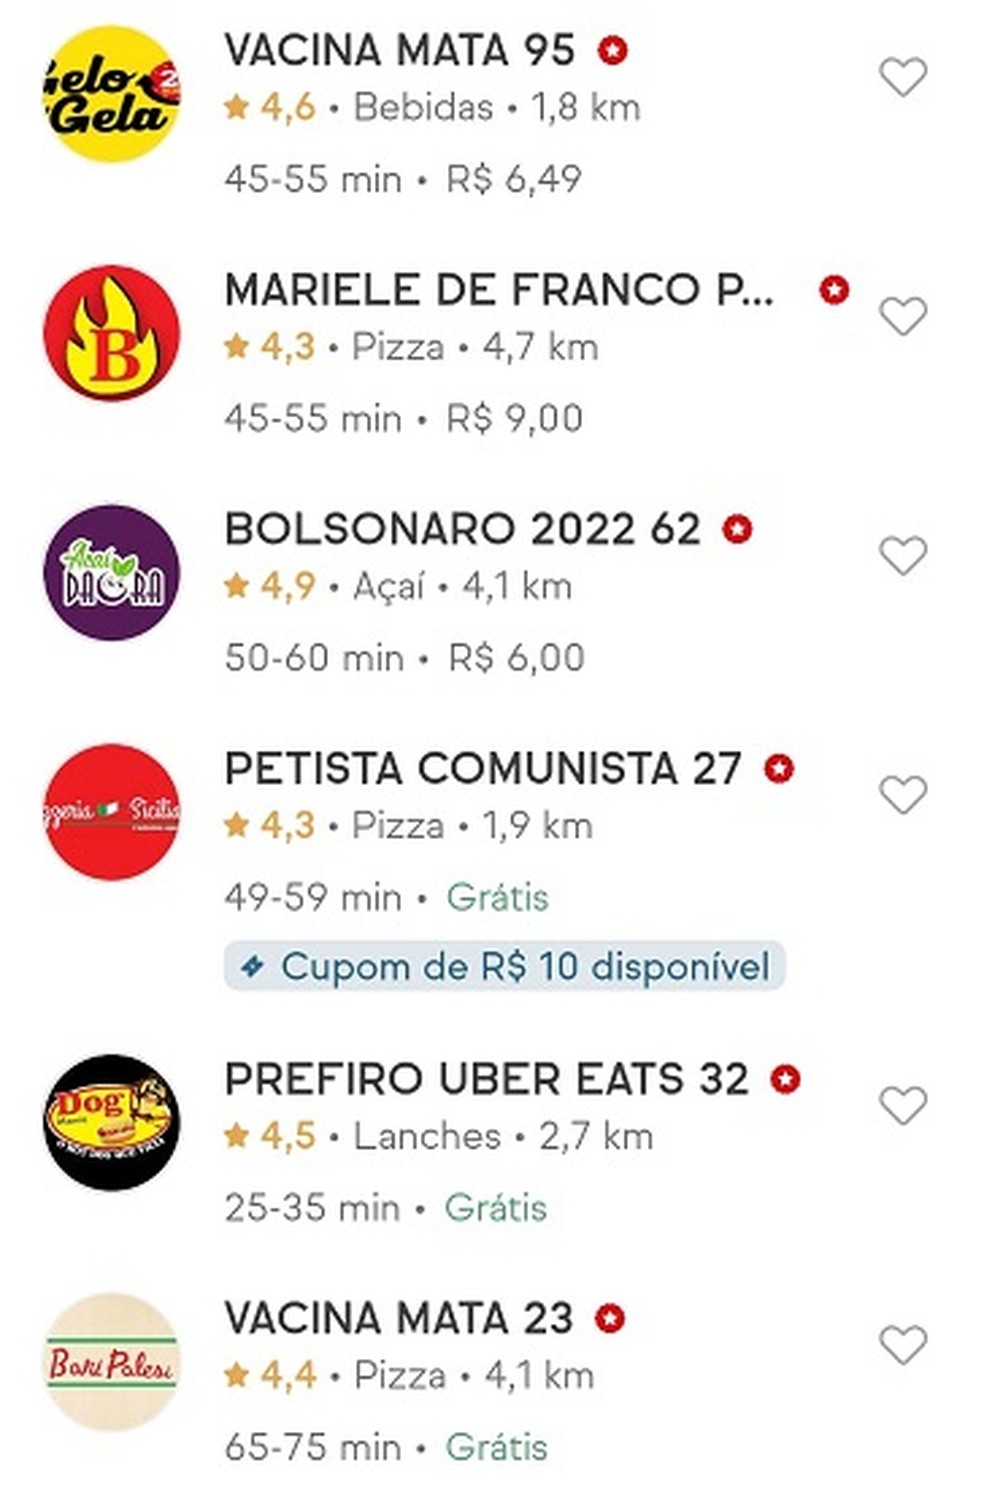 Restaurantes têm nomes alterados no iFood por mensagens de apoio a Bolsonaro e contra vacina; empresa afirma ainda que os nomes corretos 'estão sendo restabelecidos' — Foto: Reprodução